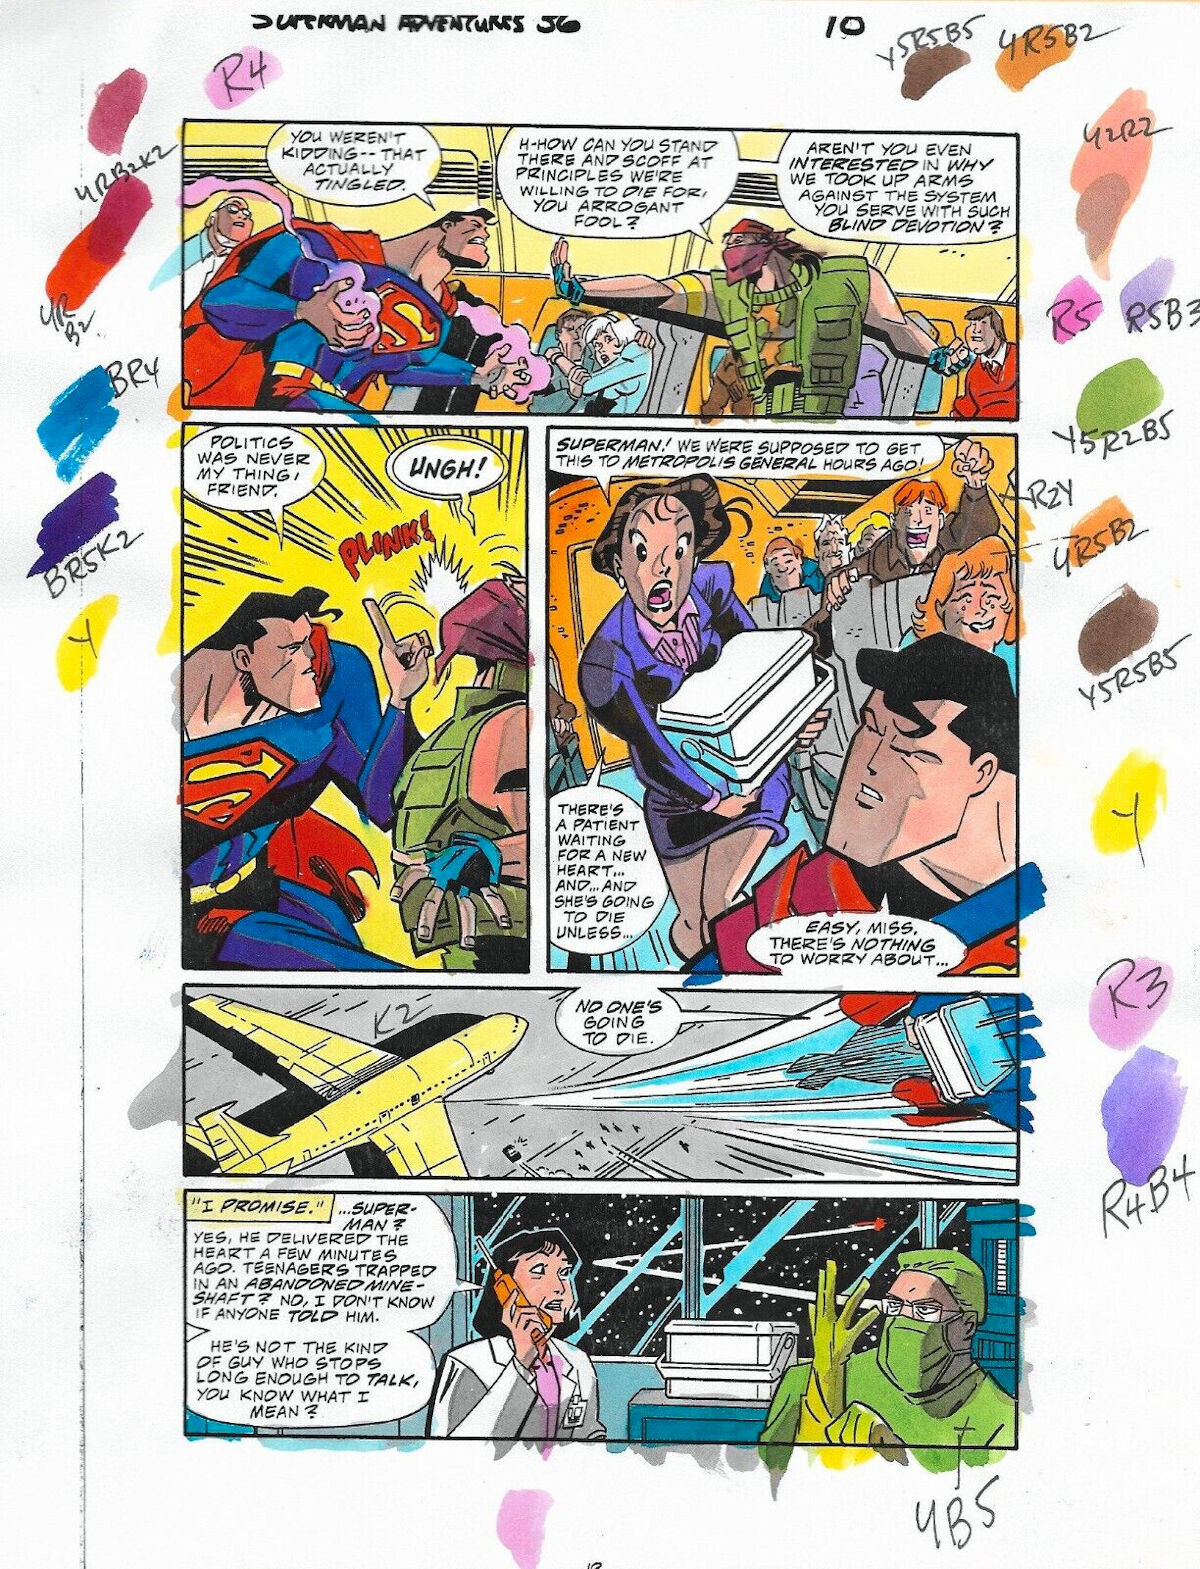 Original 1999 Superman Adventures 36 color guide colorist art page 10, DC Comics